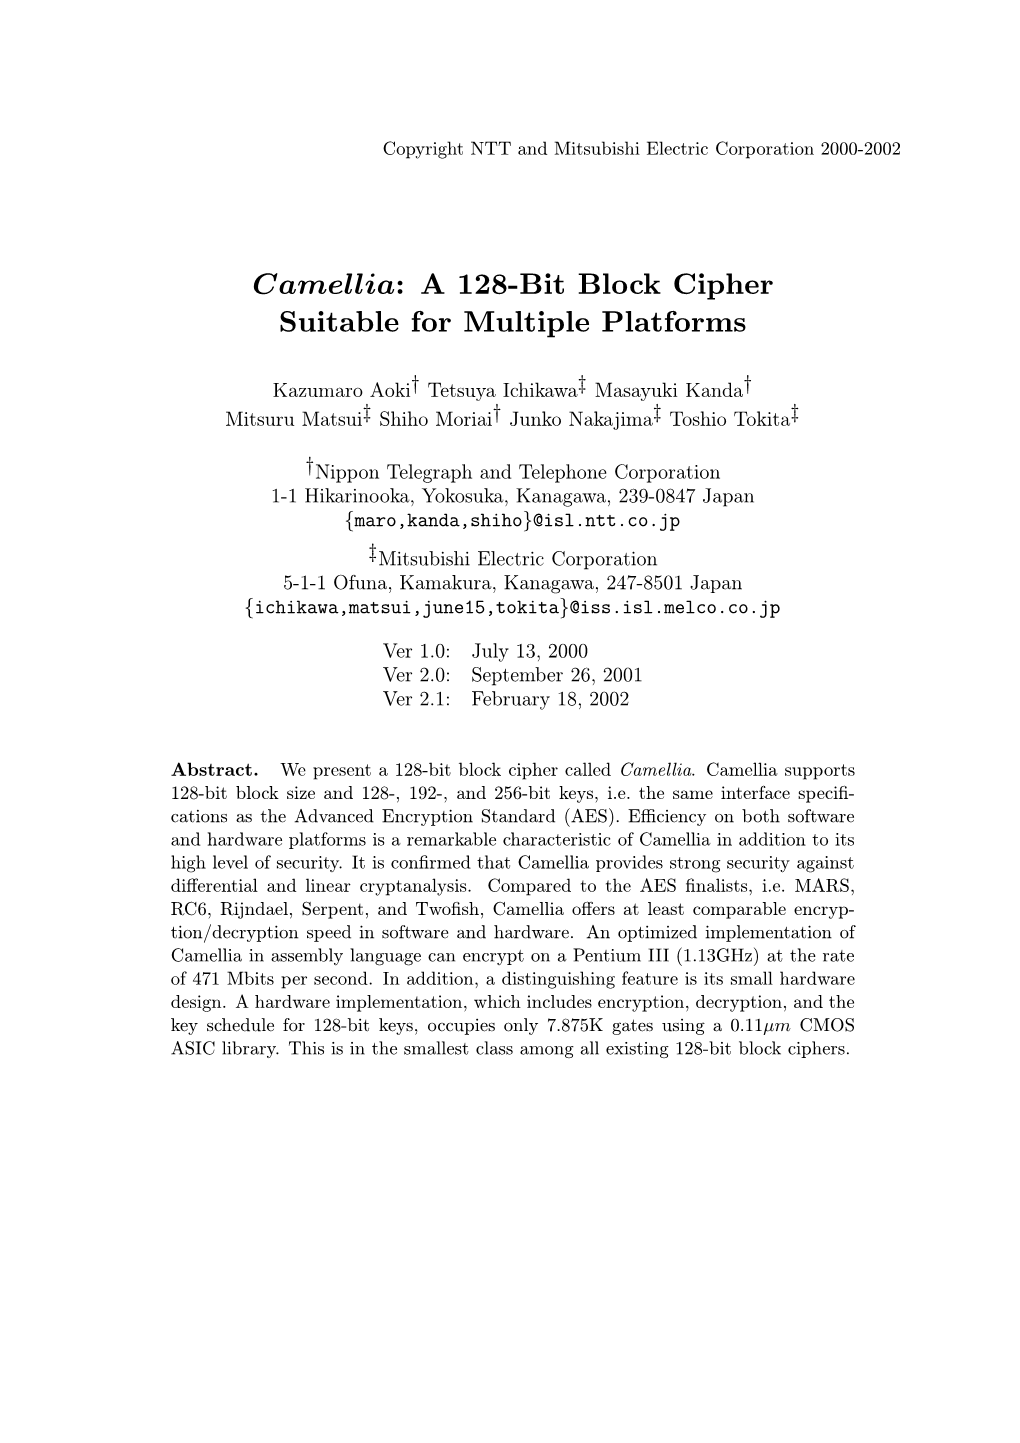 Camellia: a 128-Bit Block Cipher Suitable for Multiple Platforms